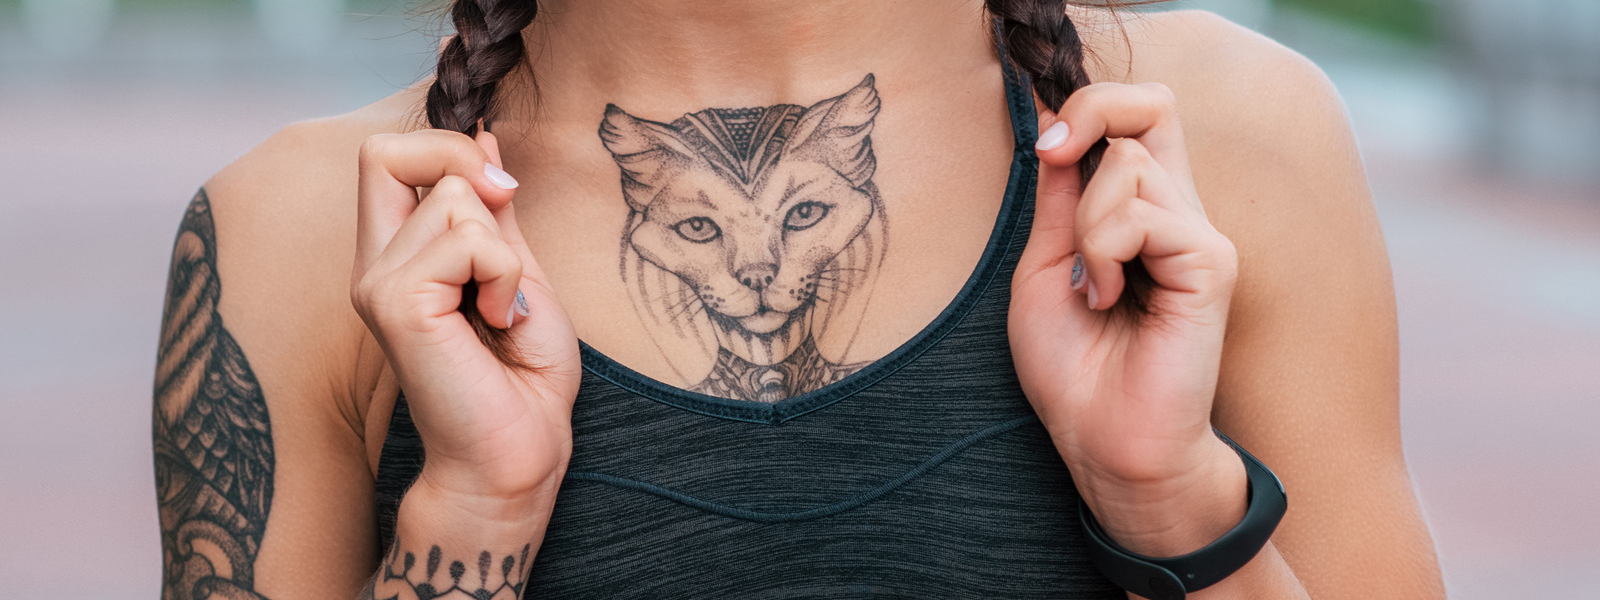 Fique forte e nunca desista  Writing tattoos, Simplistic tattoos, Tattoos  for women